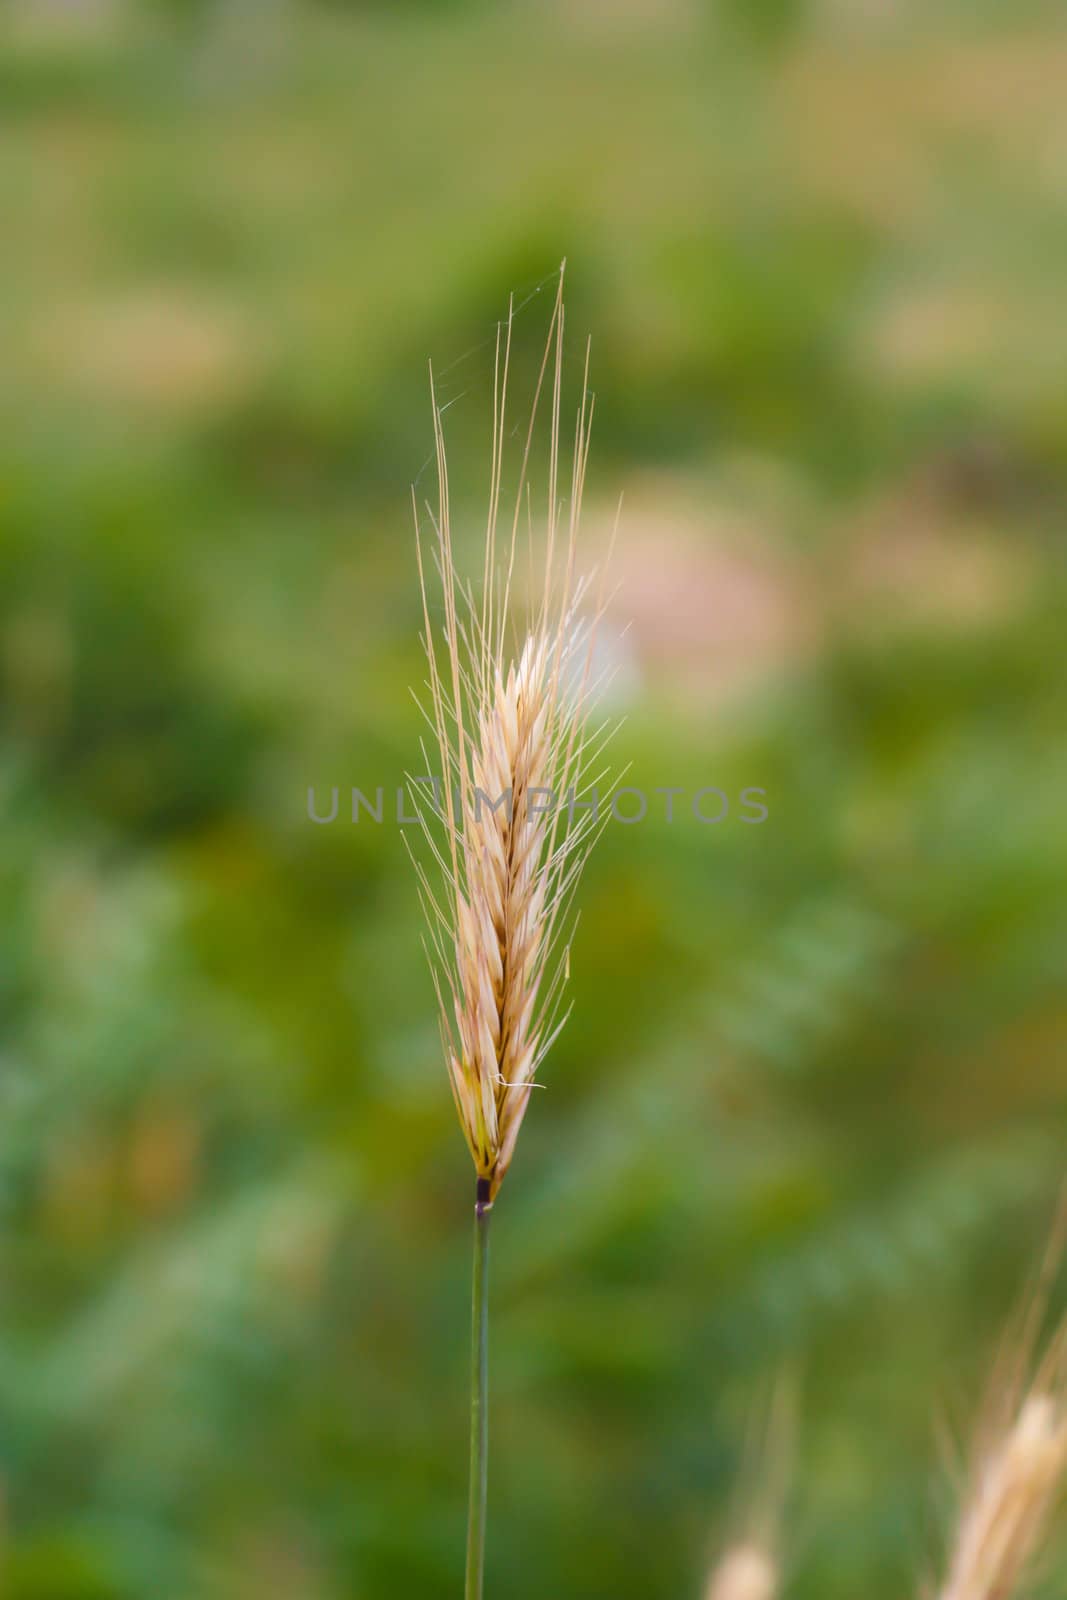 an ear of wheat on a green background by schankz